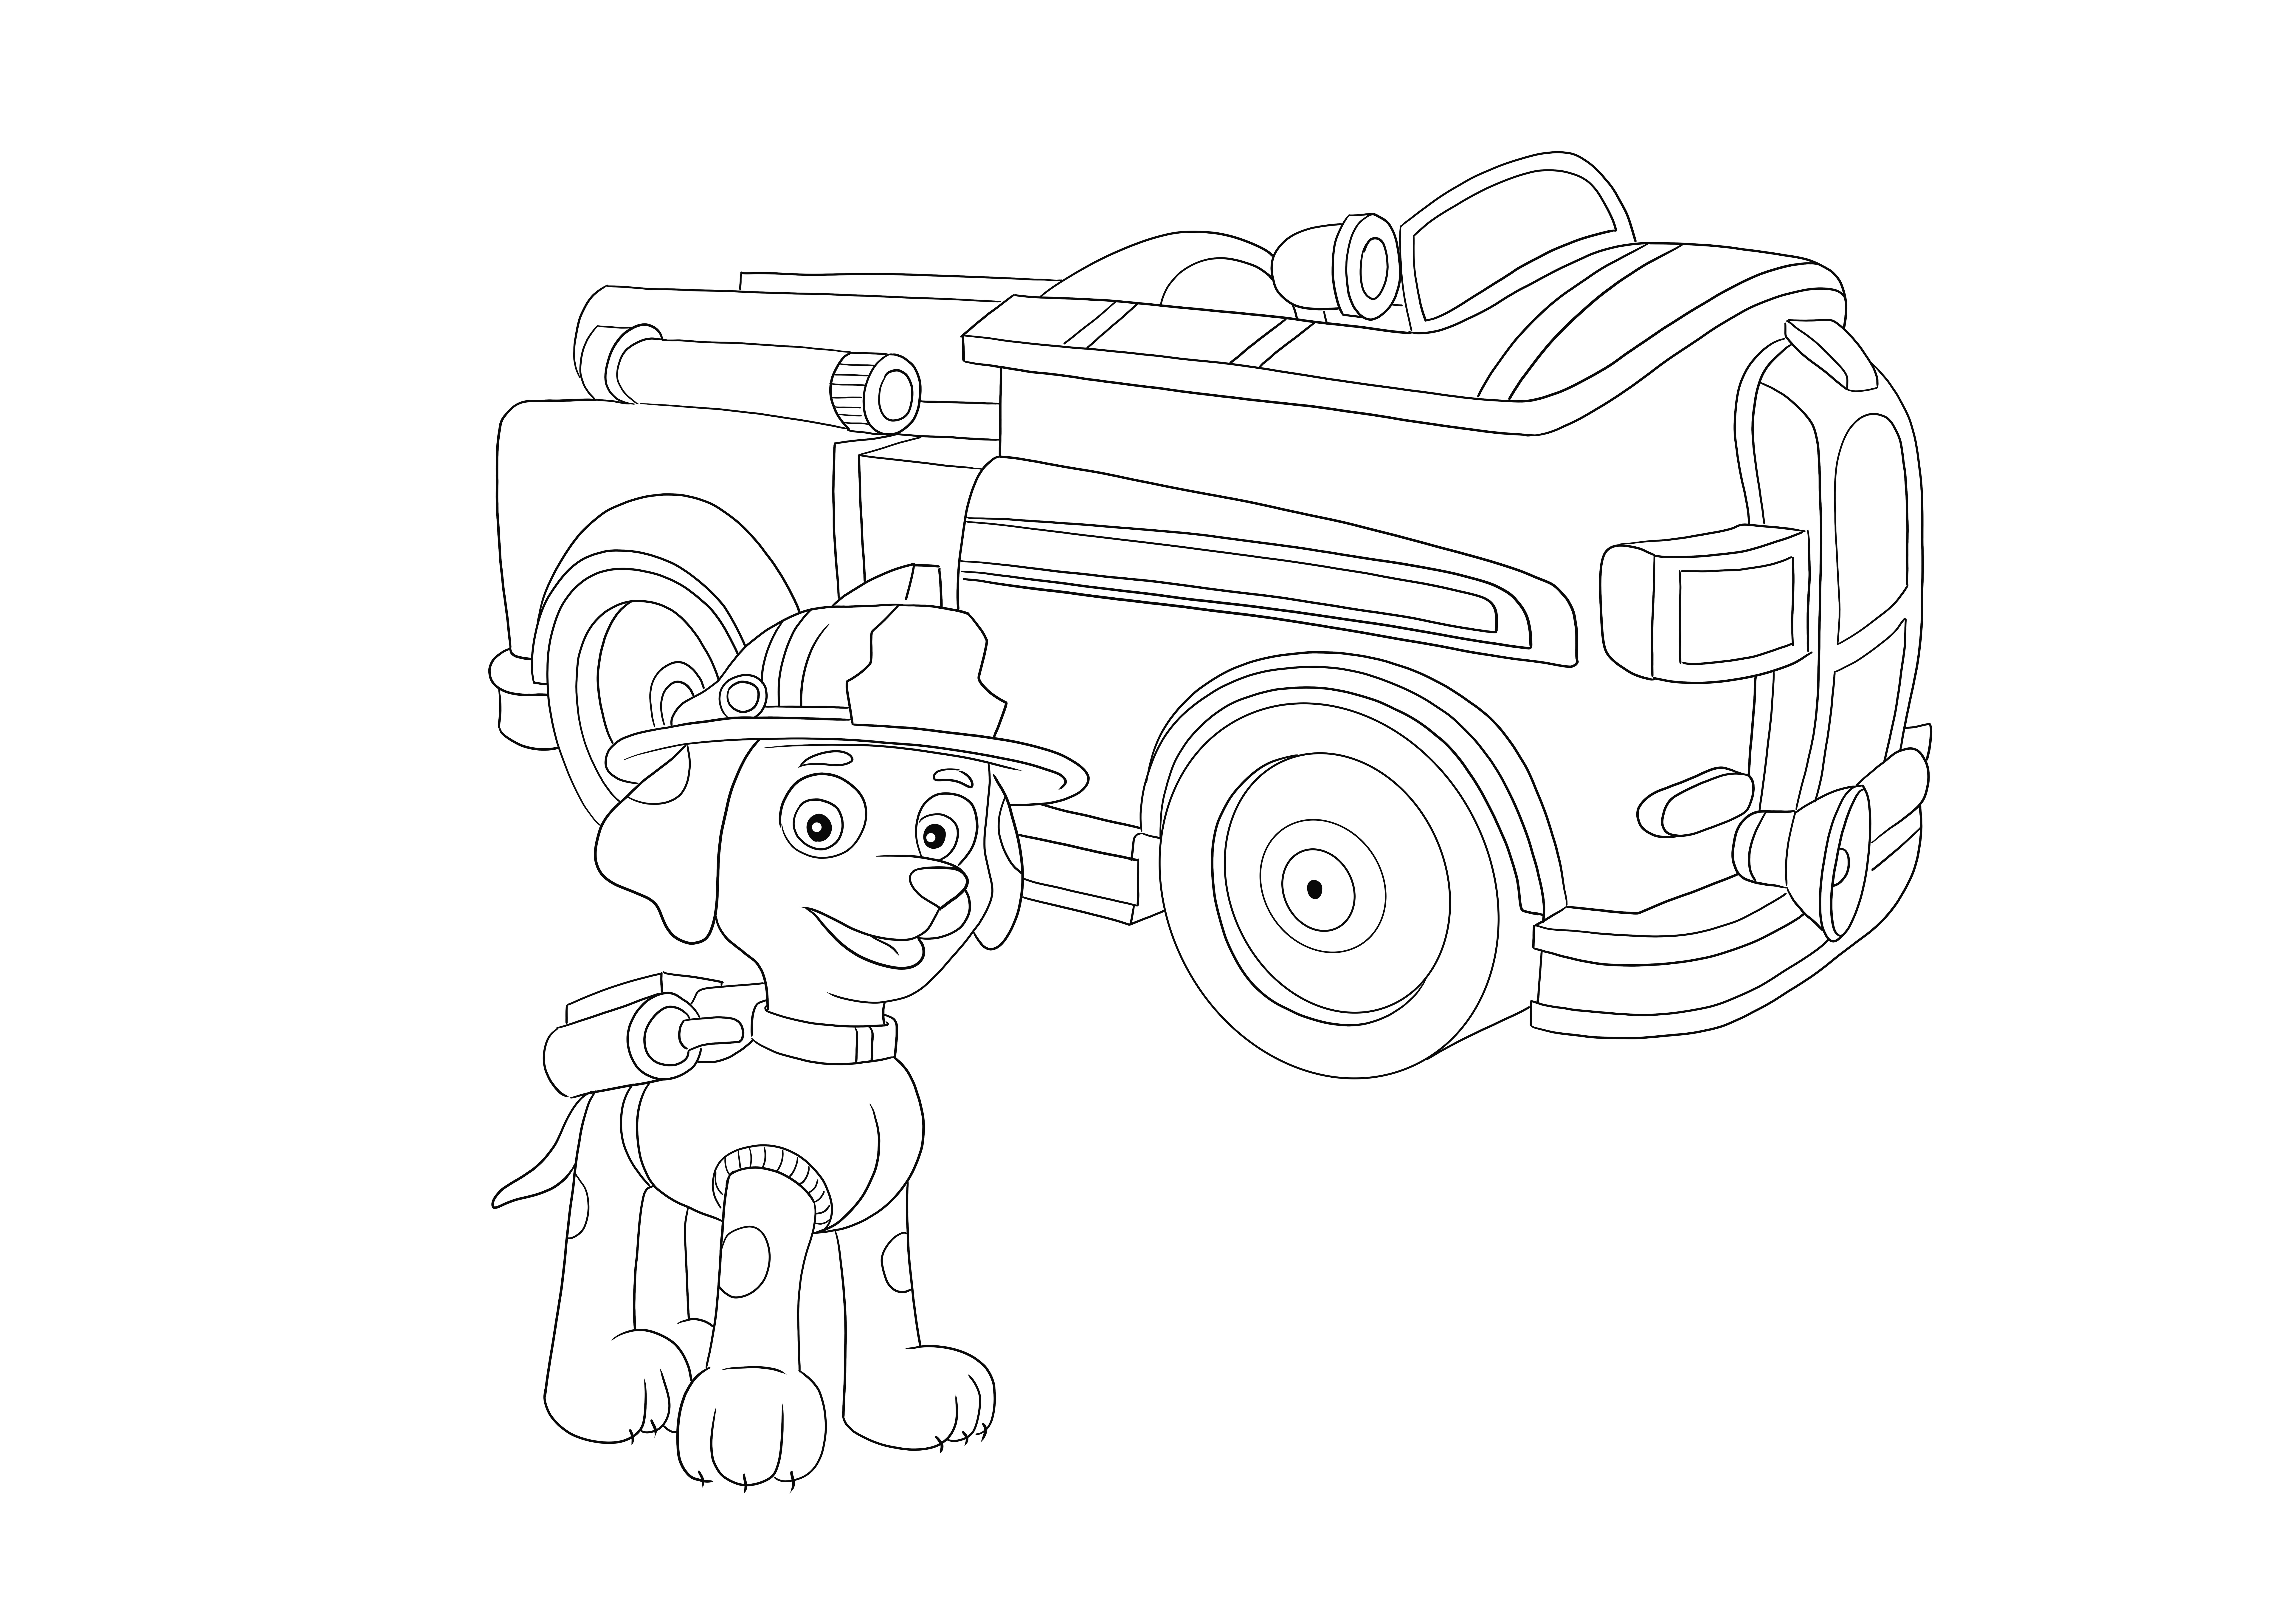 Paw Patrol Marshall con camión de bomberos imprimible gratis para colorear simple